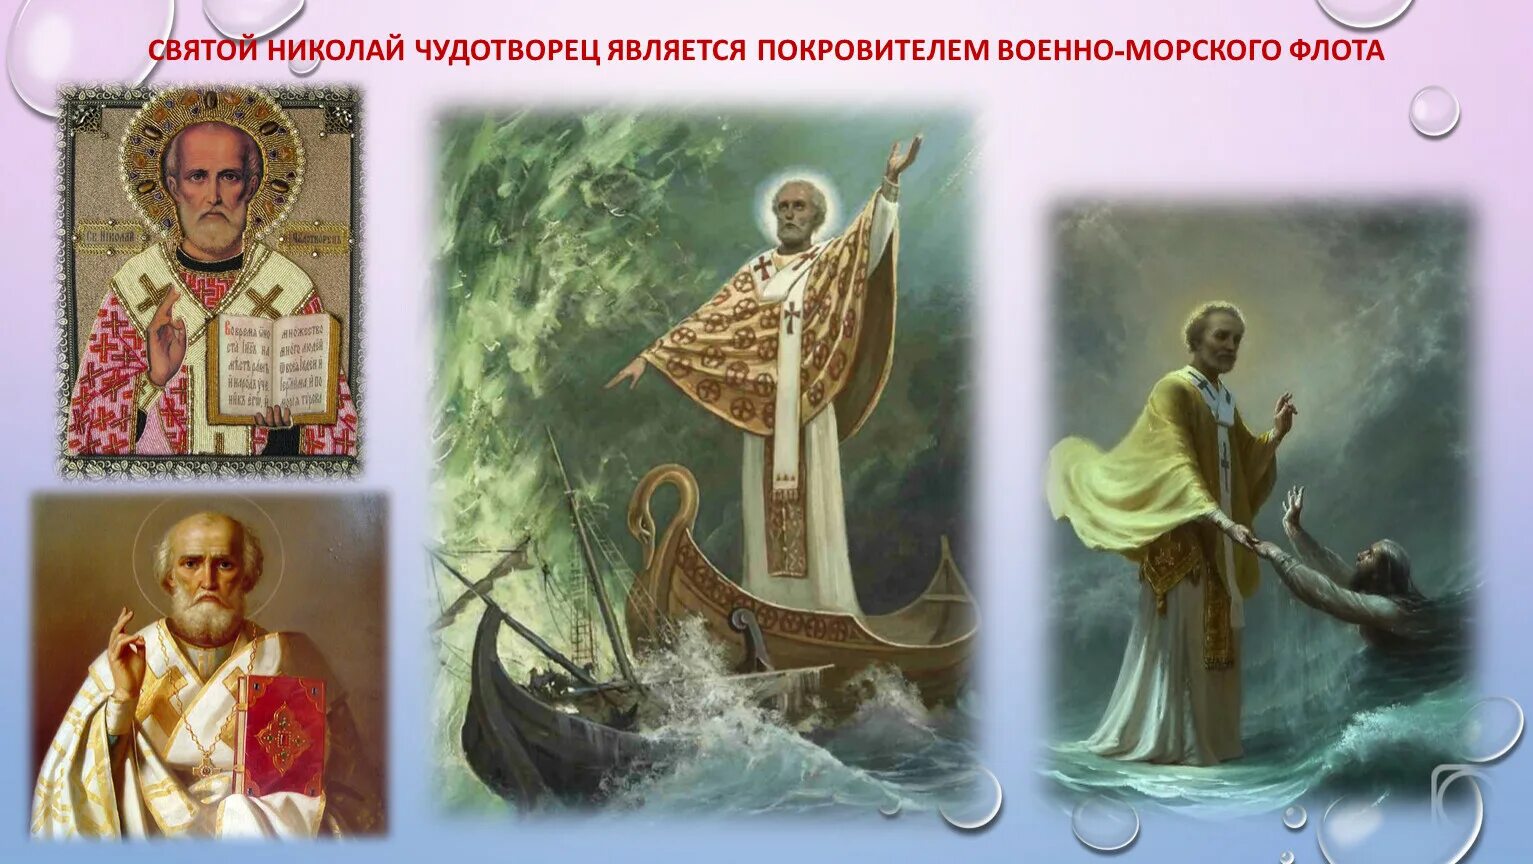 Иконы Николая Чудотворца покровителя моряков.